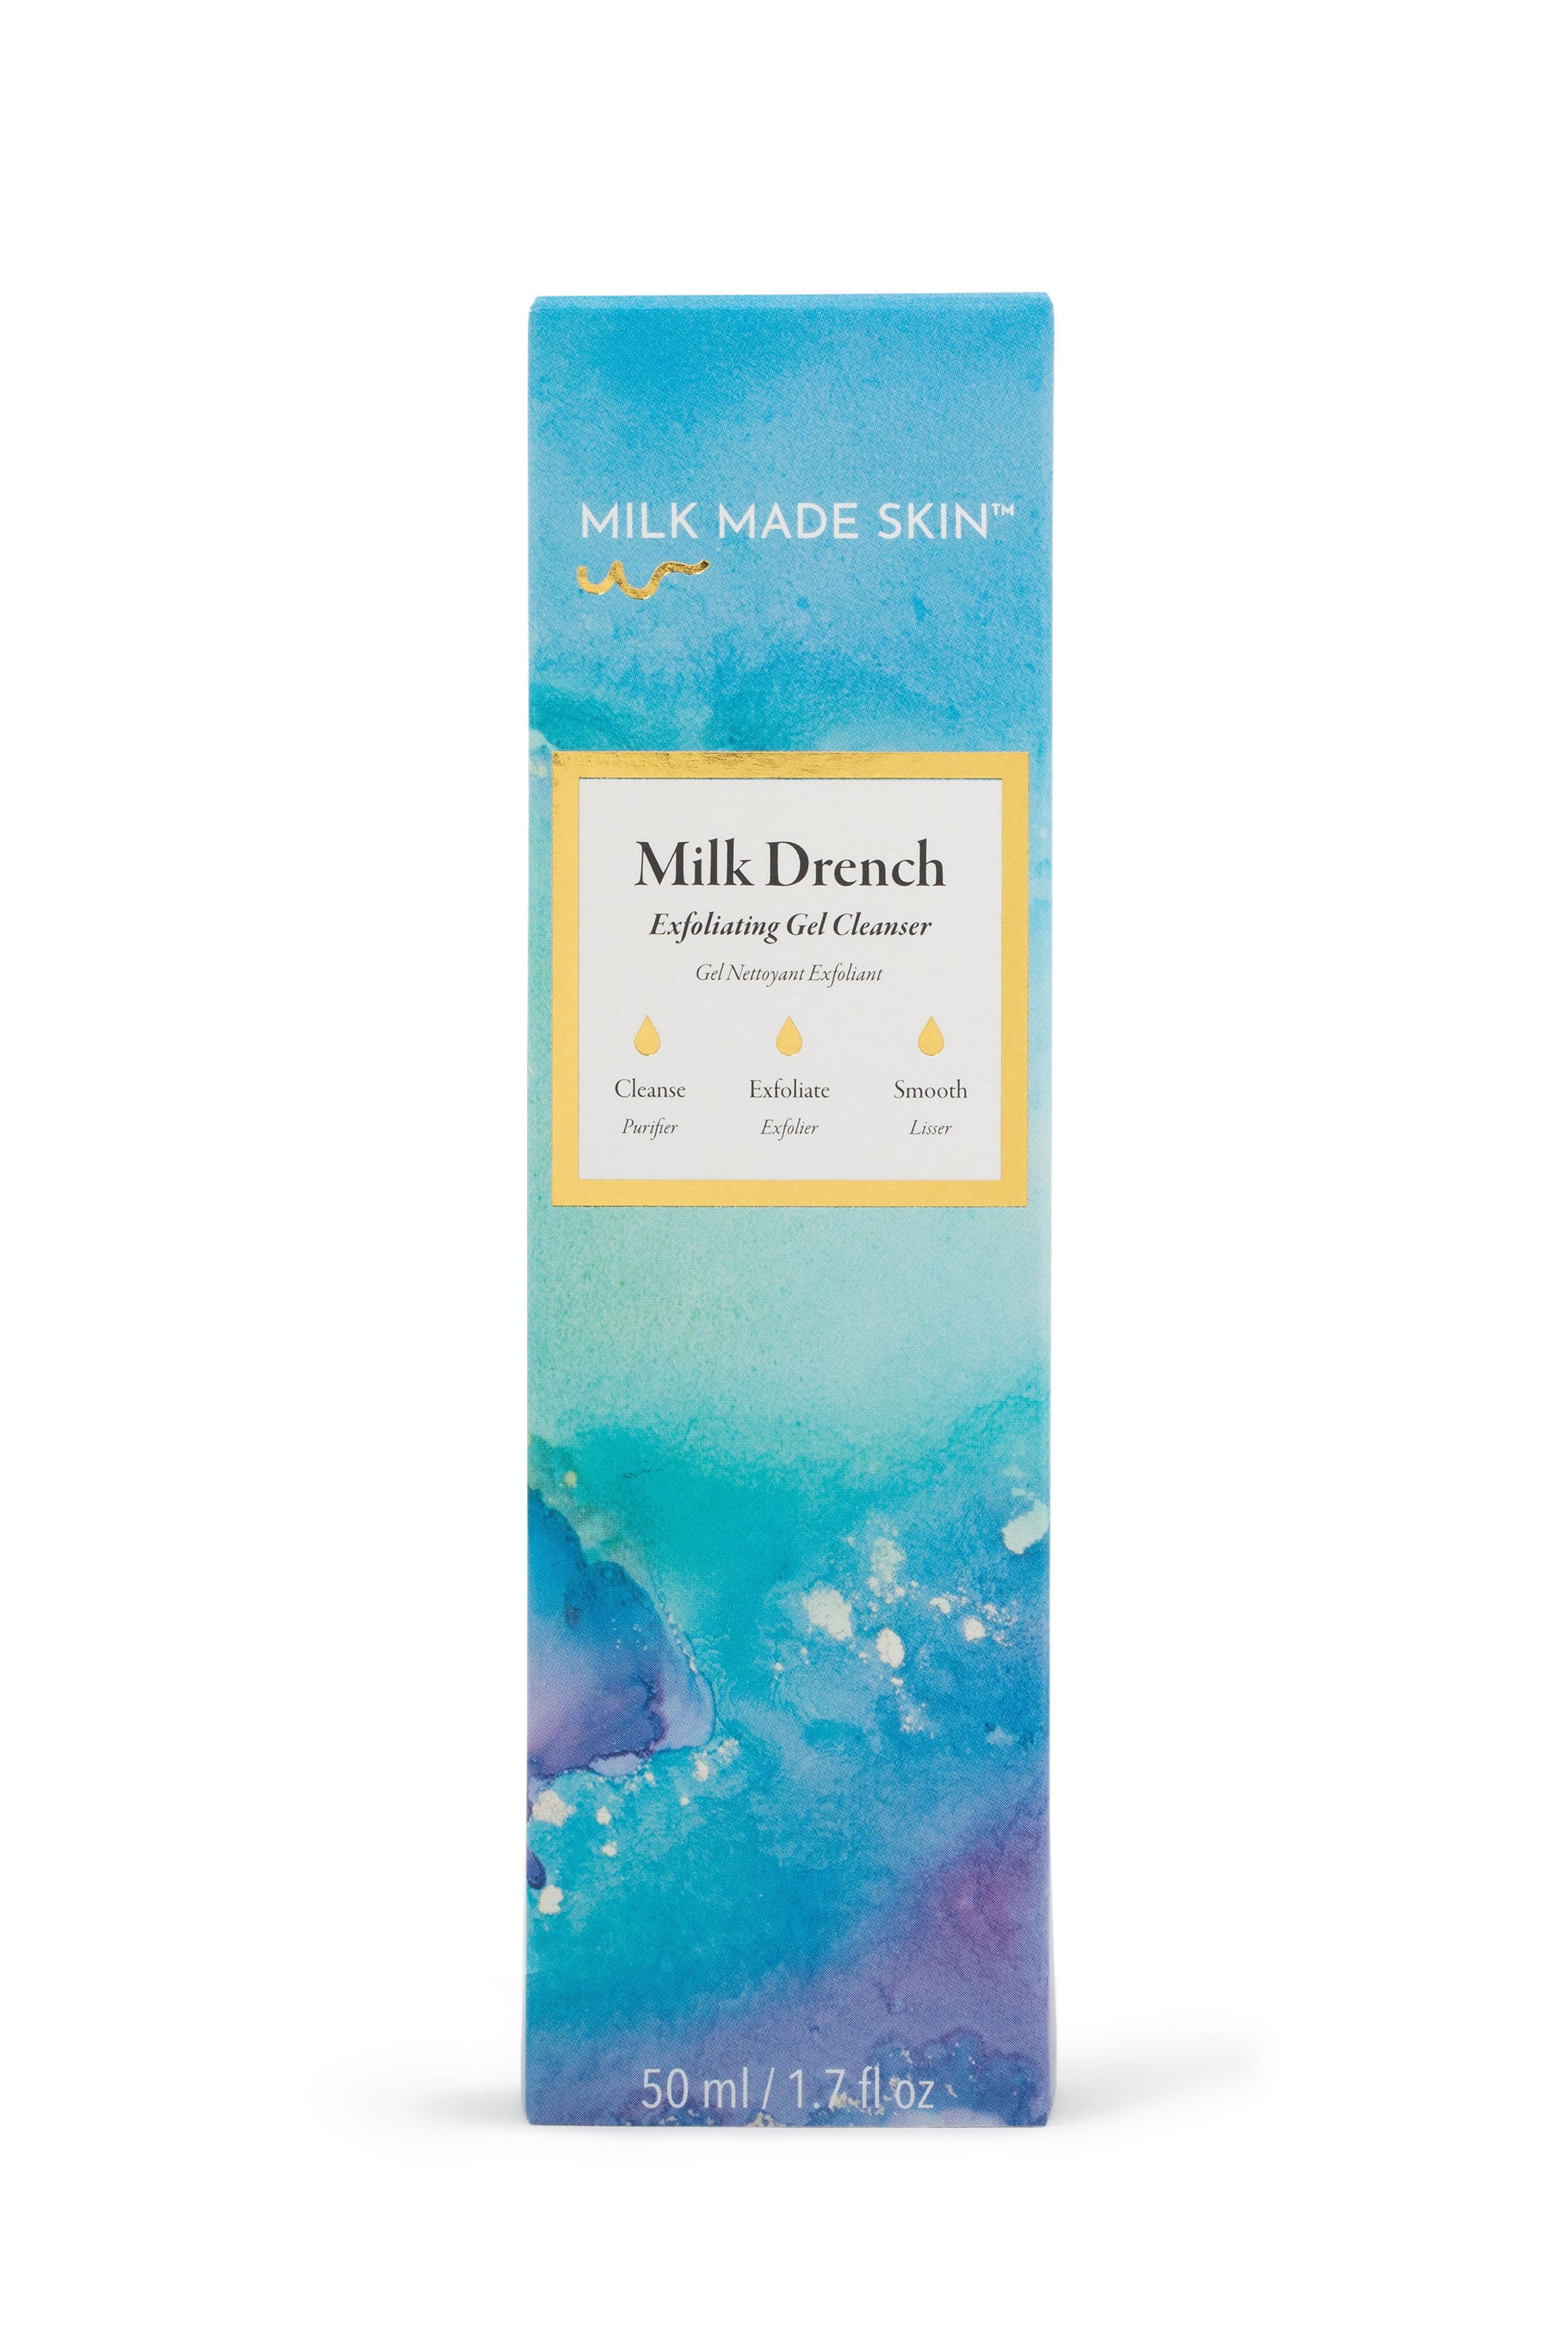 Milk Made Skin Milk Drench Exfoliating Gel Cleanser box